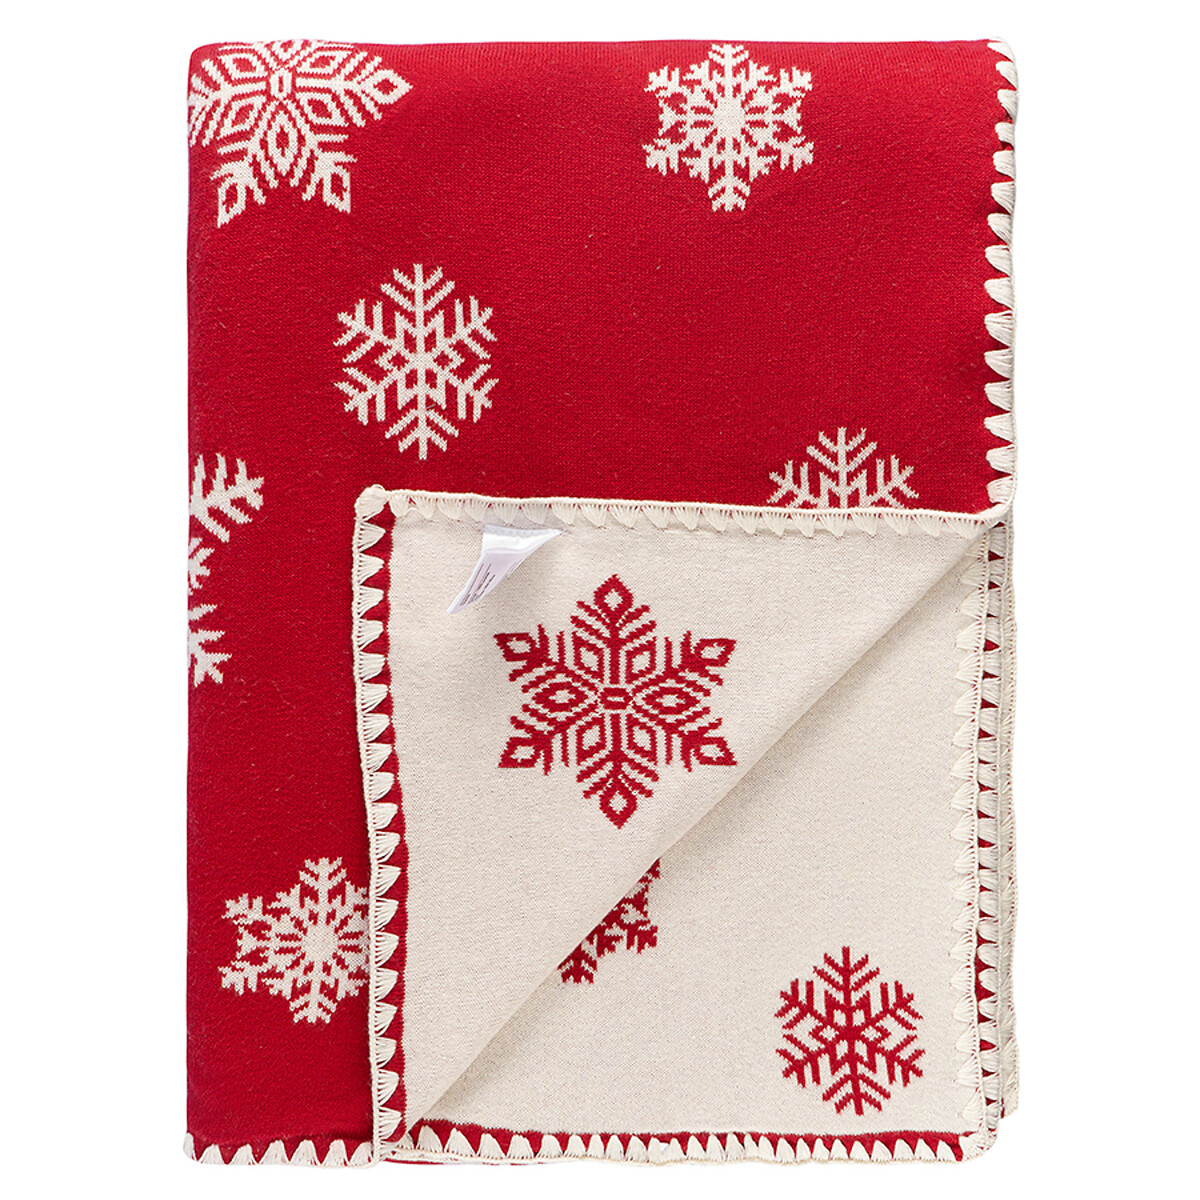 Плед из хлопка с новогодним рисунком Fluffy snowflakes из коллекции New Year Essential 130х180 см  130 x 180 см красный LaRedoute, размер 130 x 180 см - фото 3